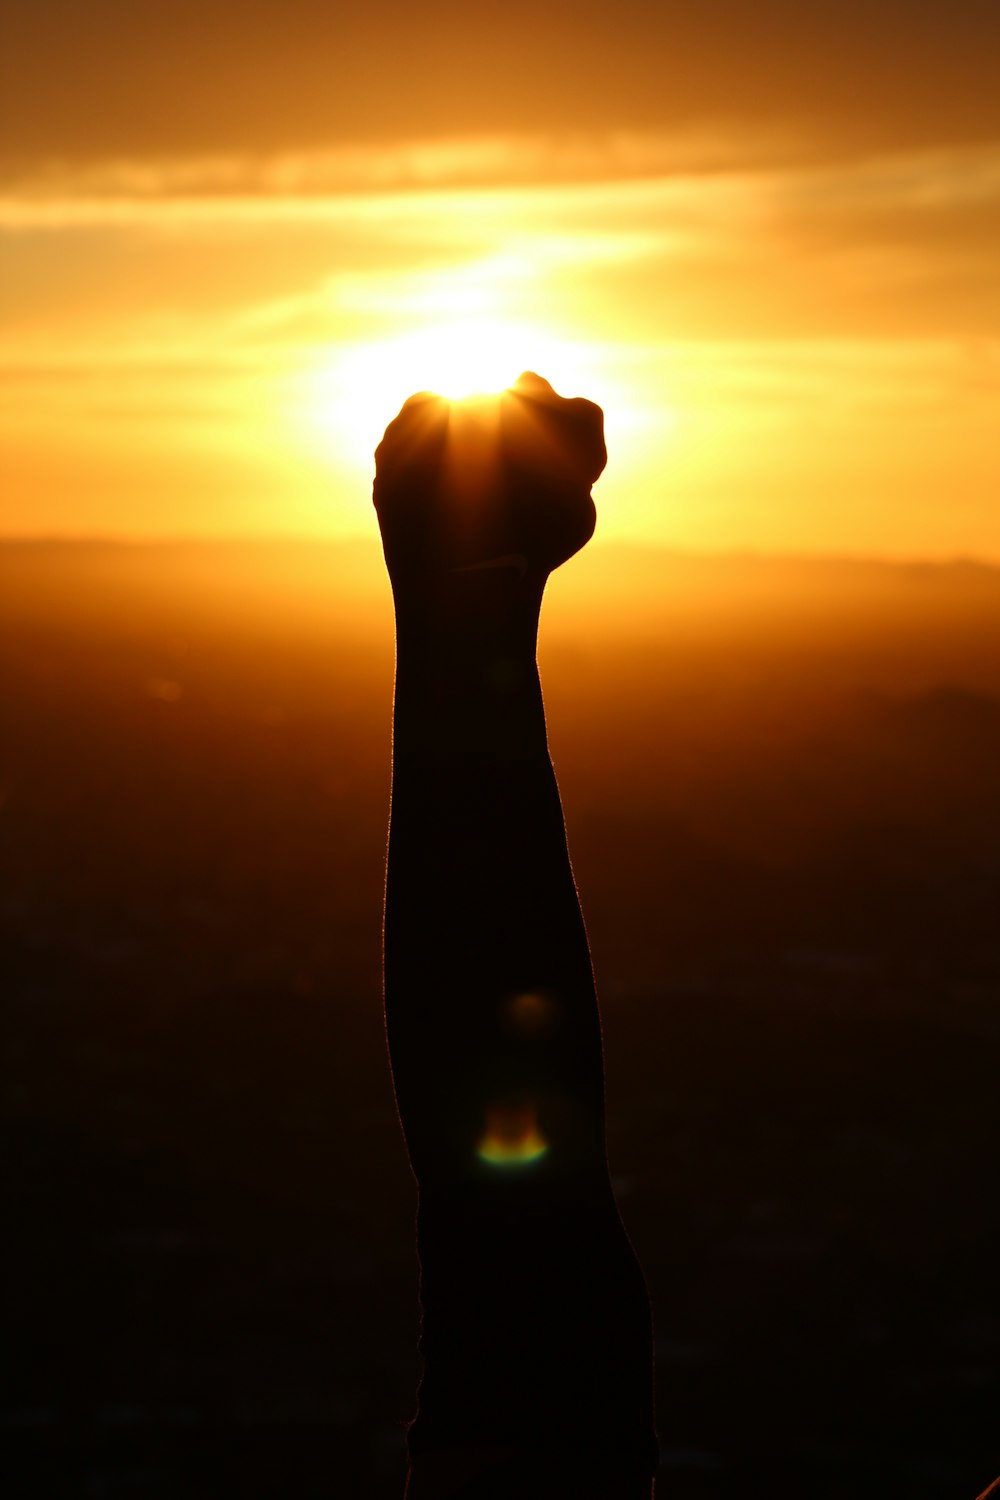 Silueta del puño de la persona durante la puesta del sol